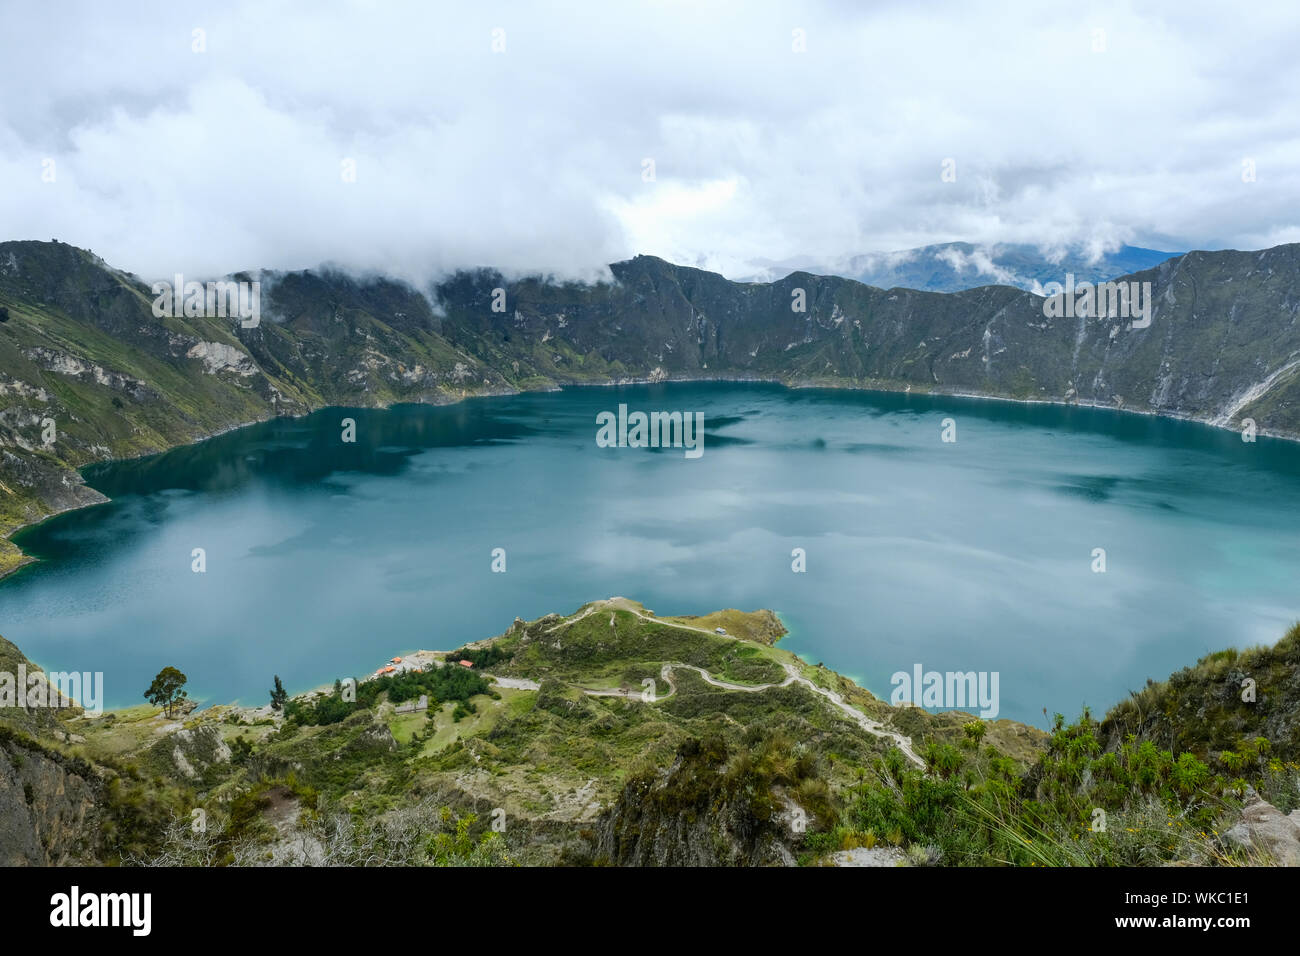 Lac Quilatoa Pujil' dans Canton, Province de Cotopaxi, Equateur. Quilatoa est une caldeira remplie d'eau et la plus occidentale de volcan dans les Andes équatoriennes. Banque D'Images